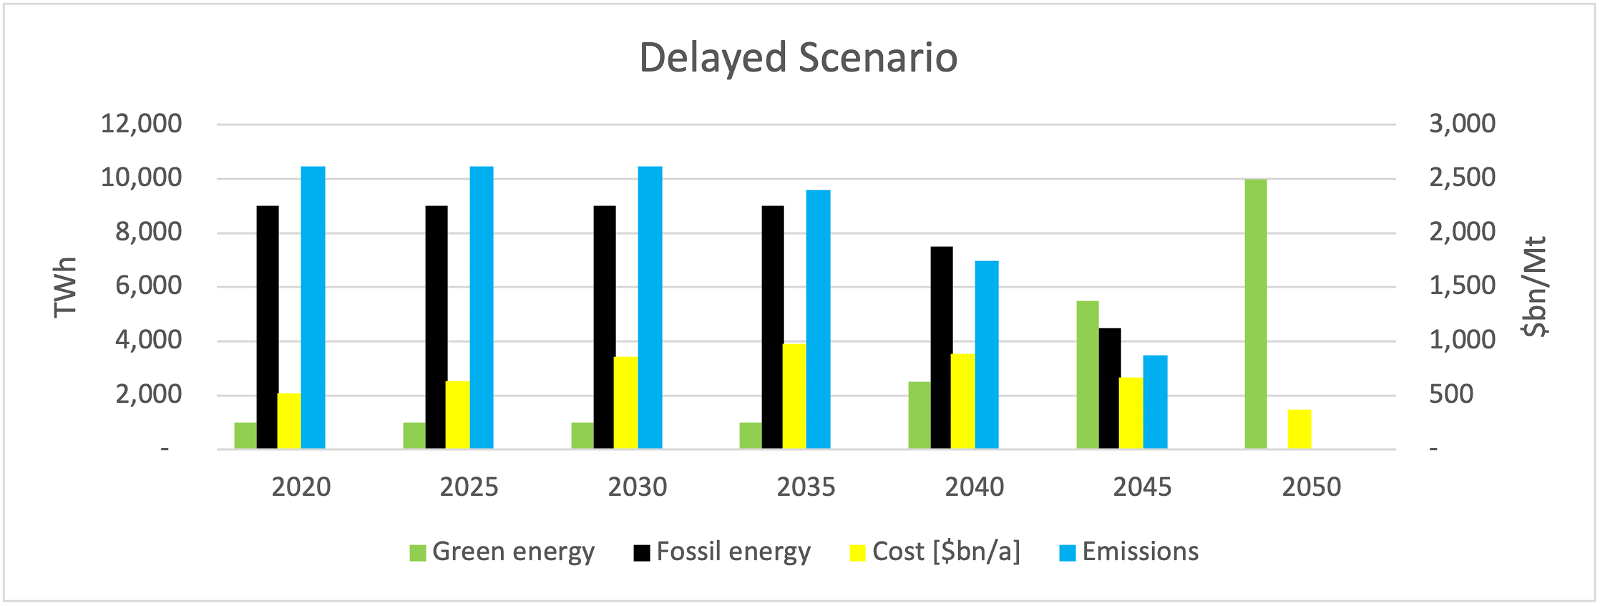 Figure 3. Key metrics of the delayed scenario